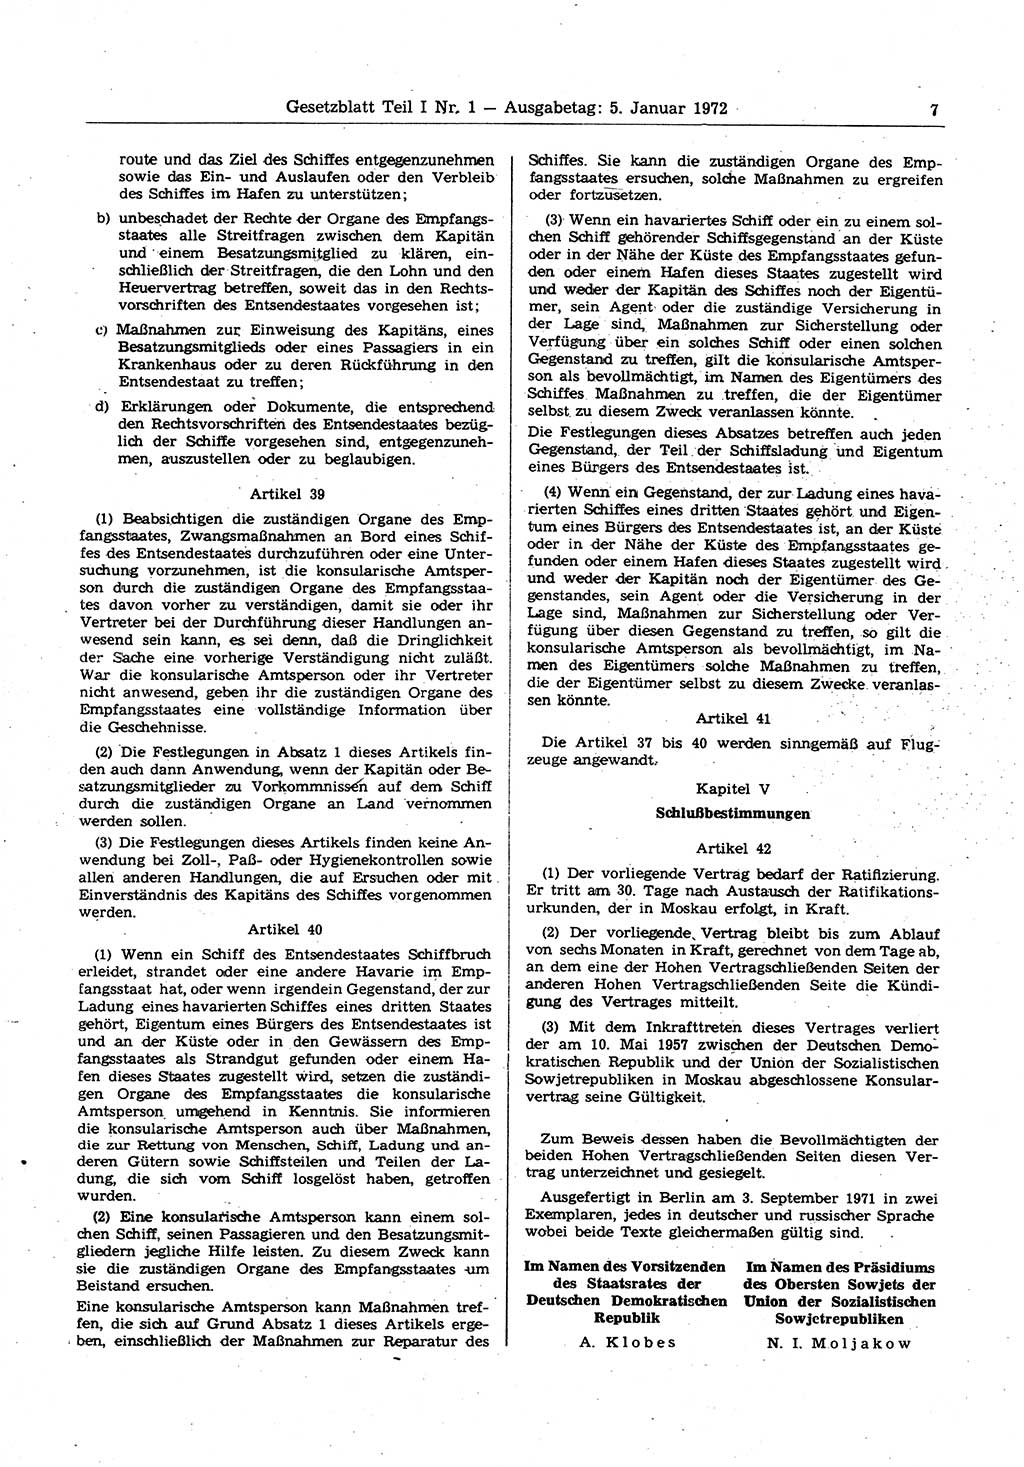 Gesetzblatt (GBl.) der Deutschen Demokratischen Republik (DDR) Teil Ⅰ 1972, Seite 7 (GBl. DDR Ⅰ 1972, S. 7)